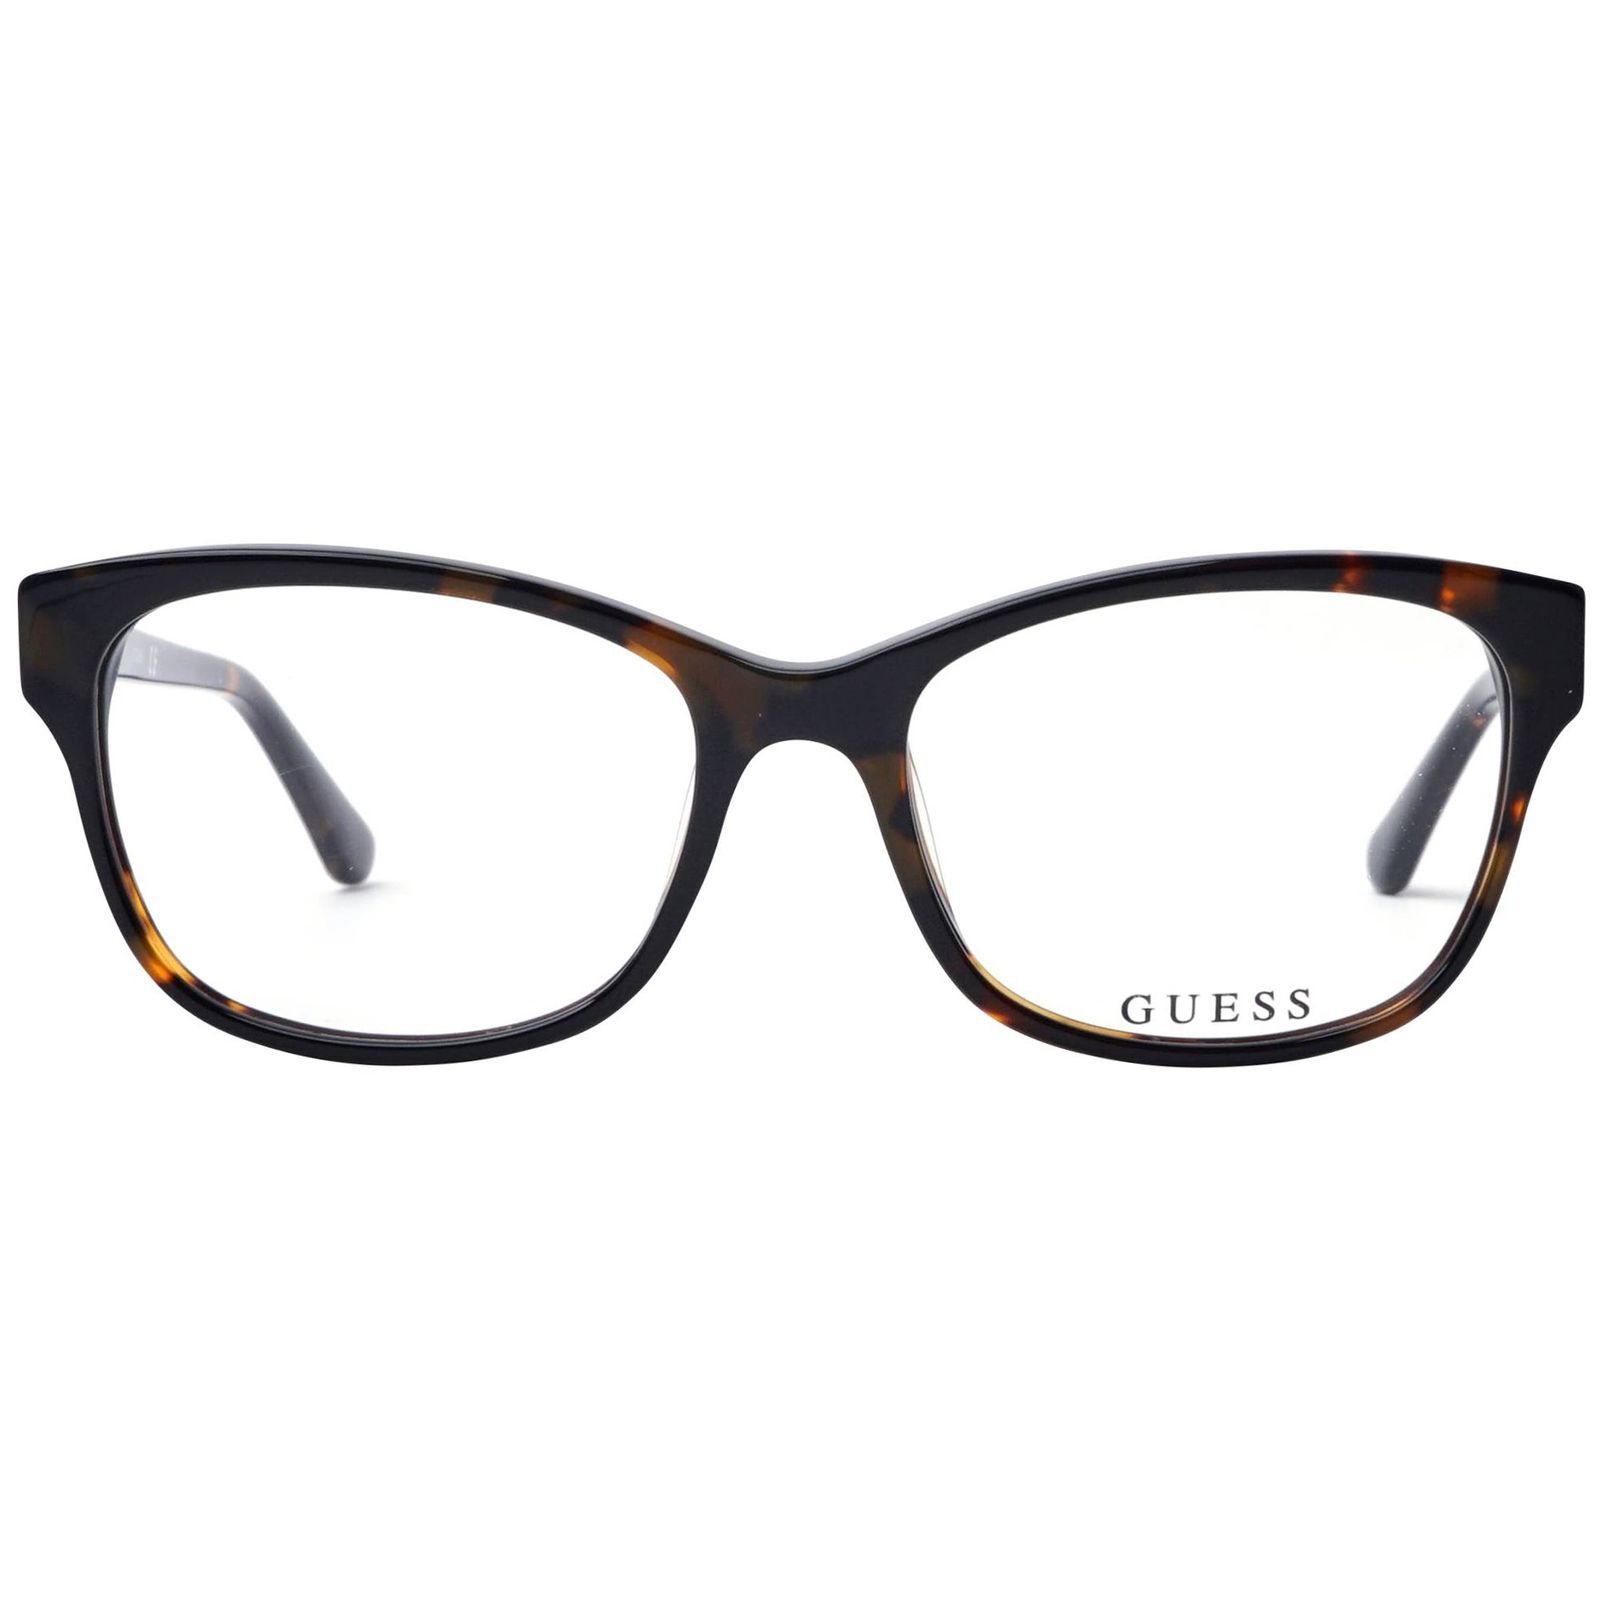 فریم عینک طبی زنانه گس مدل GU249605254 -  - 1